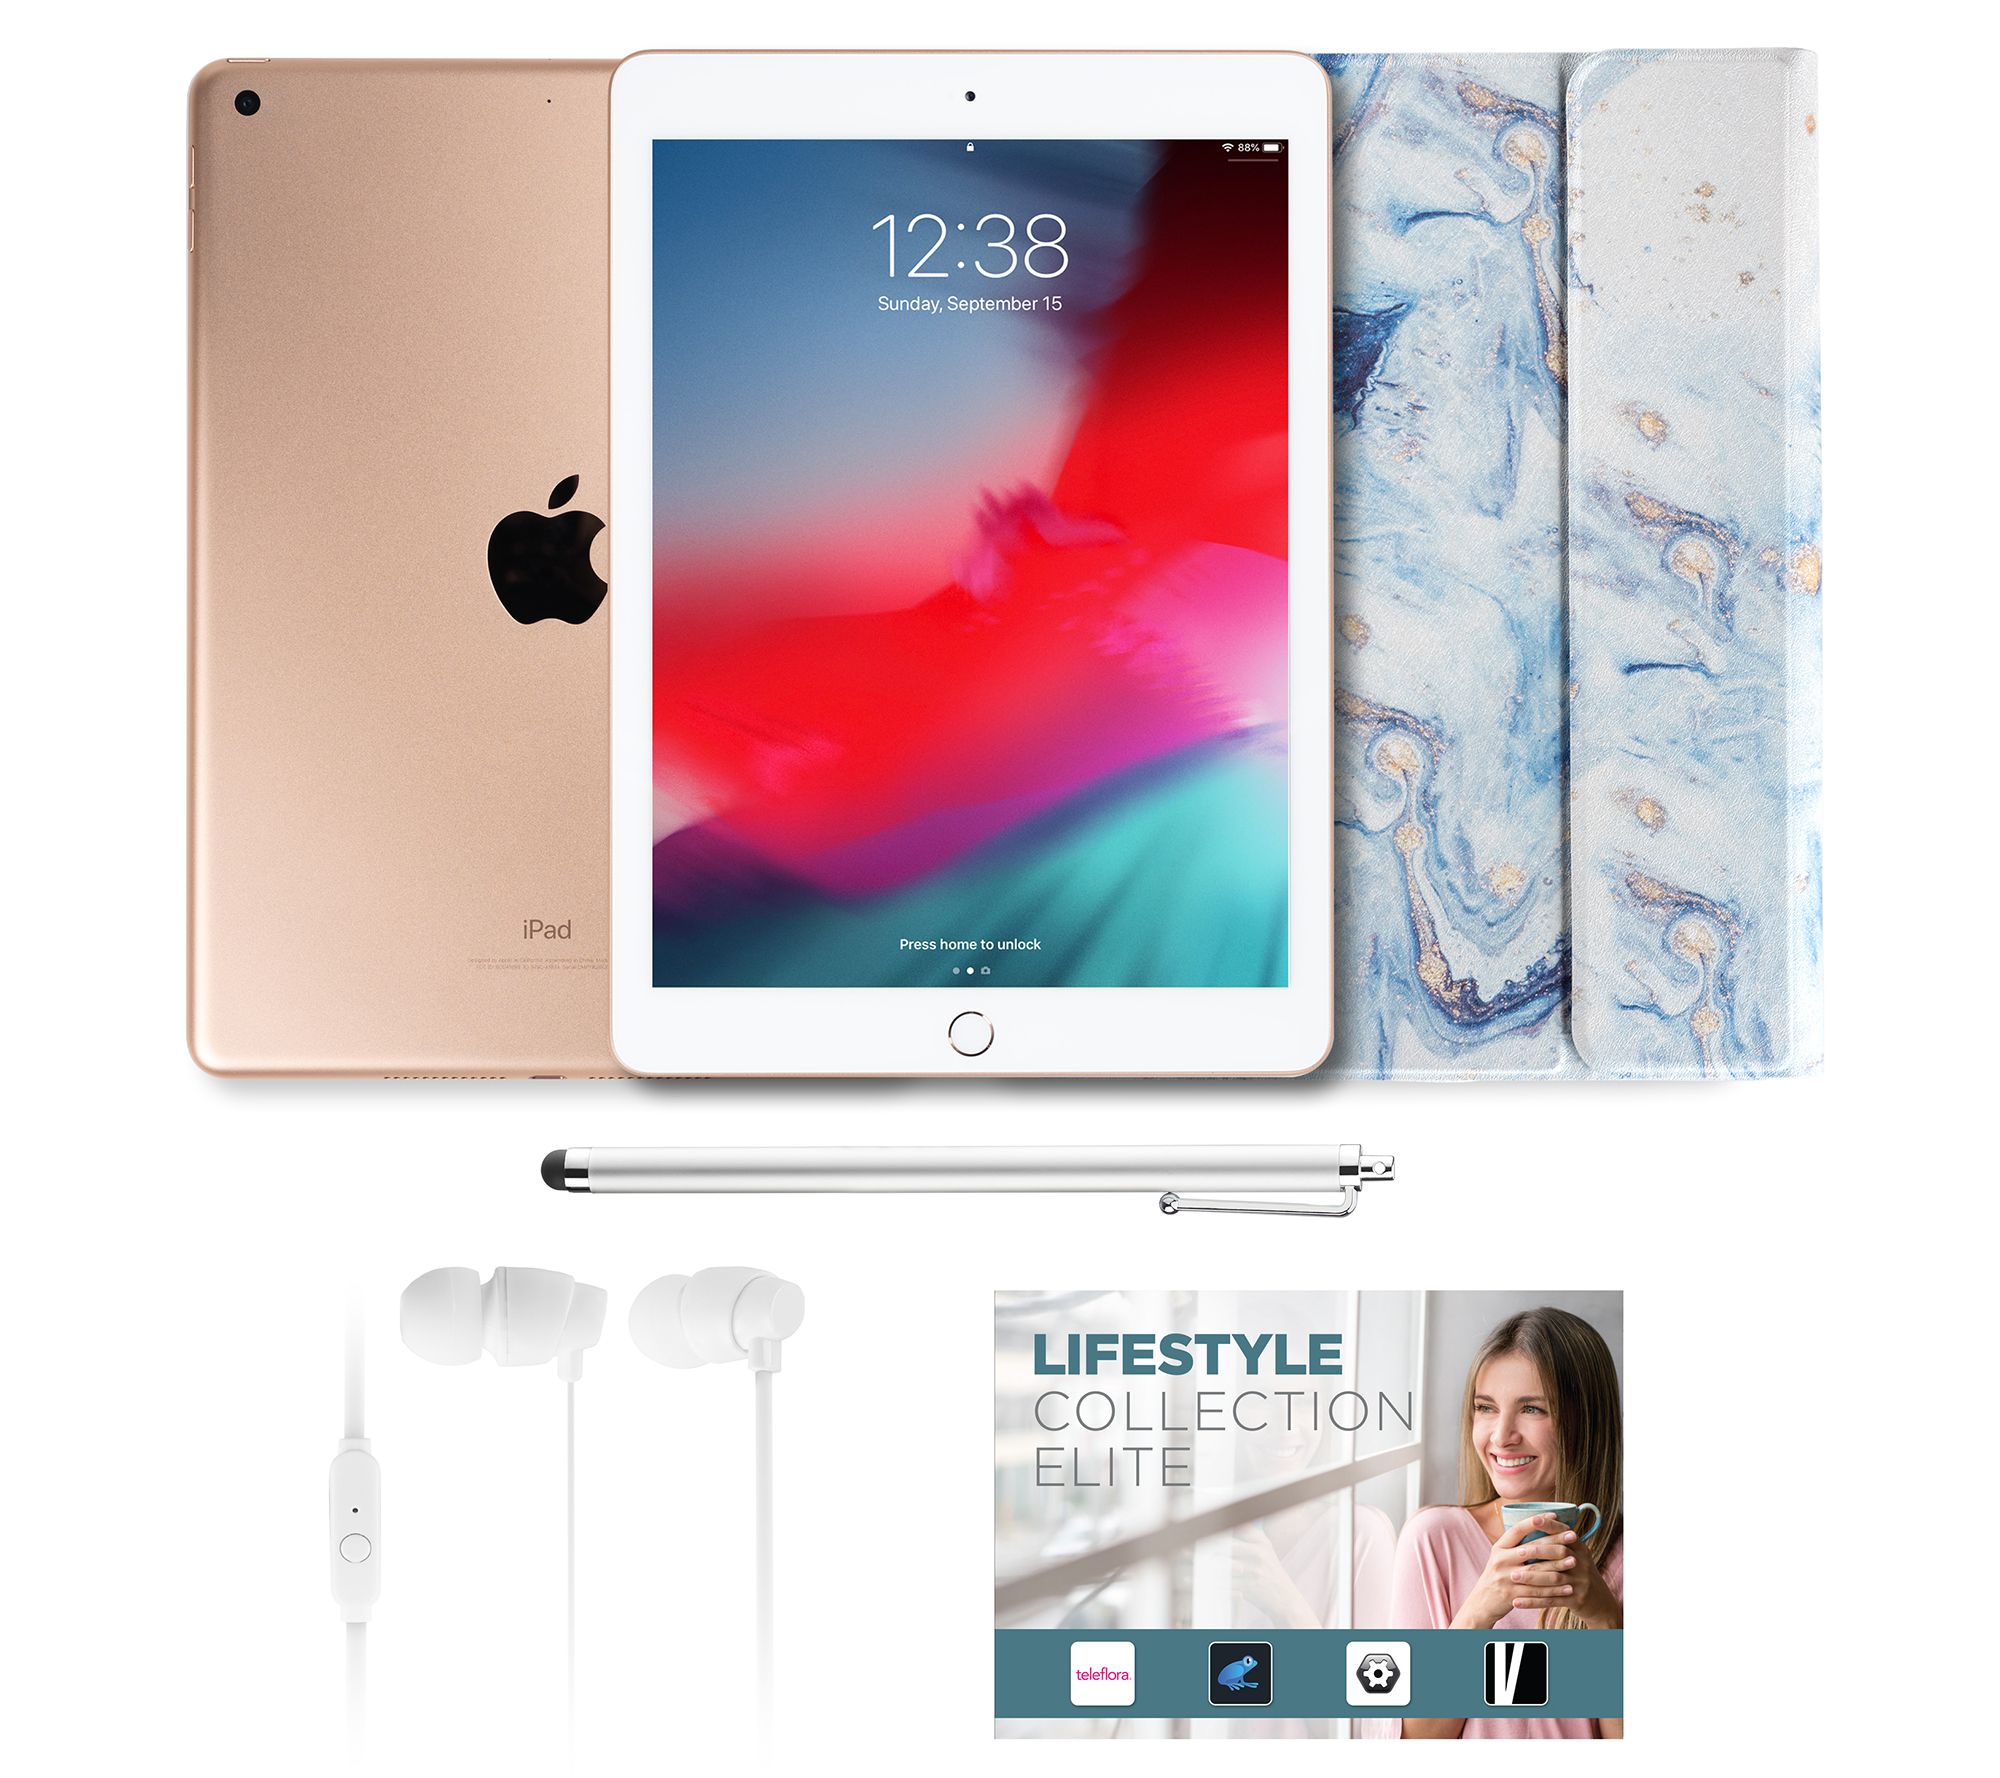 PC/タブレット タブレット Apple iPad 9.7